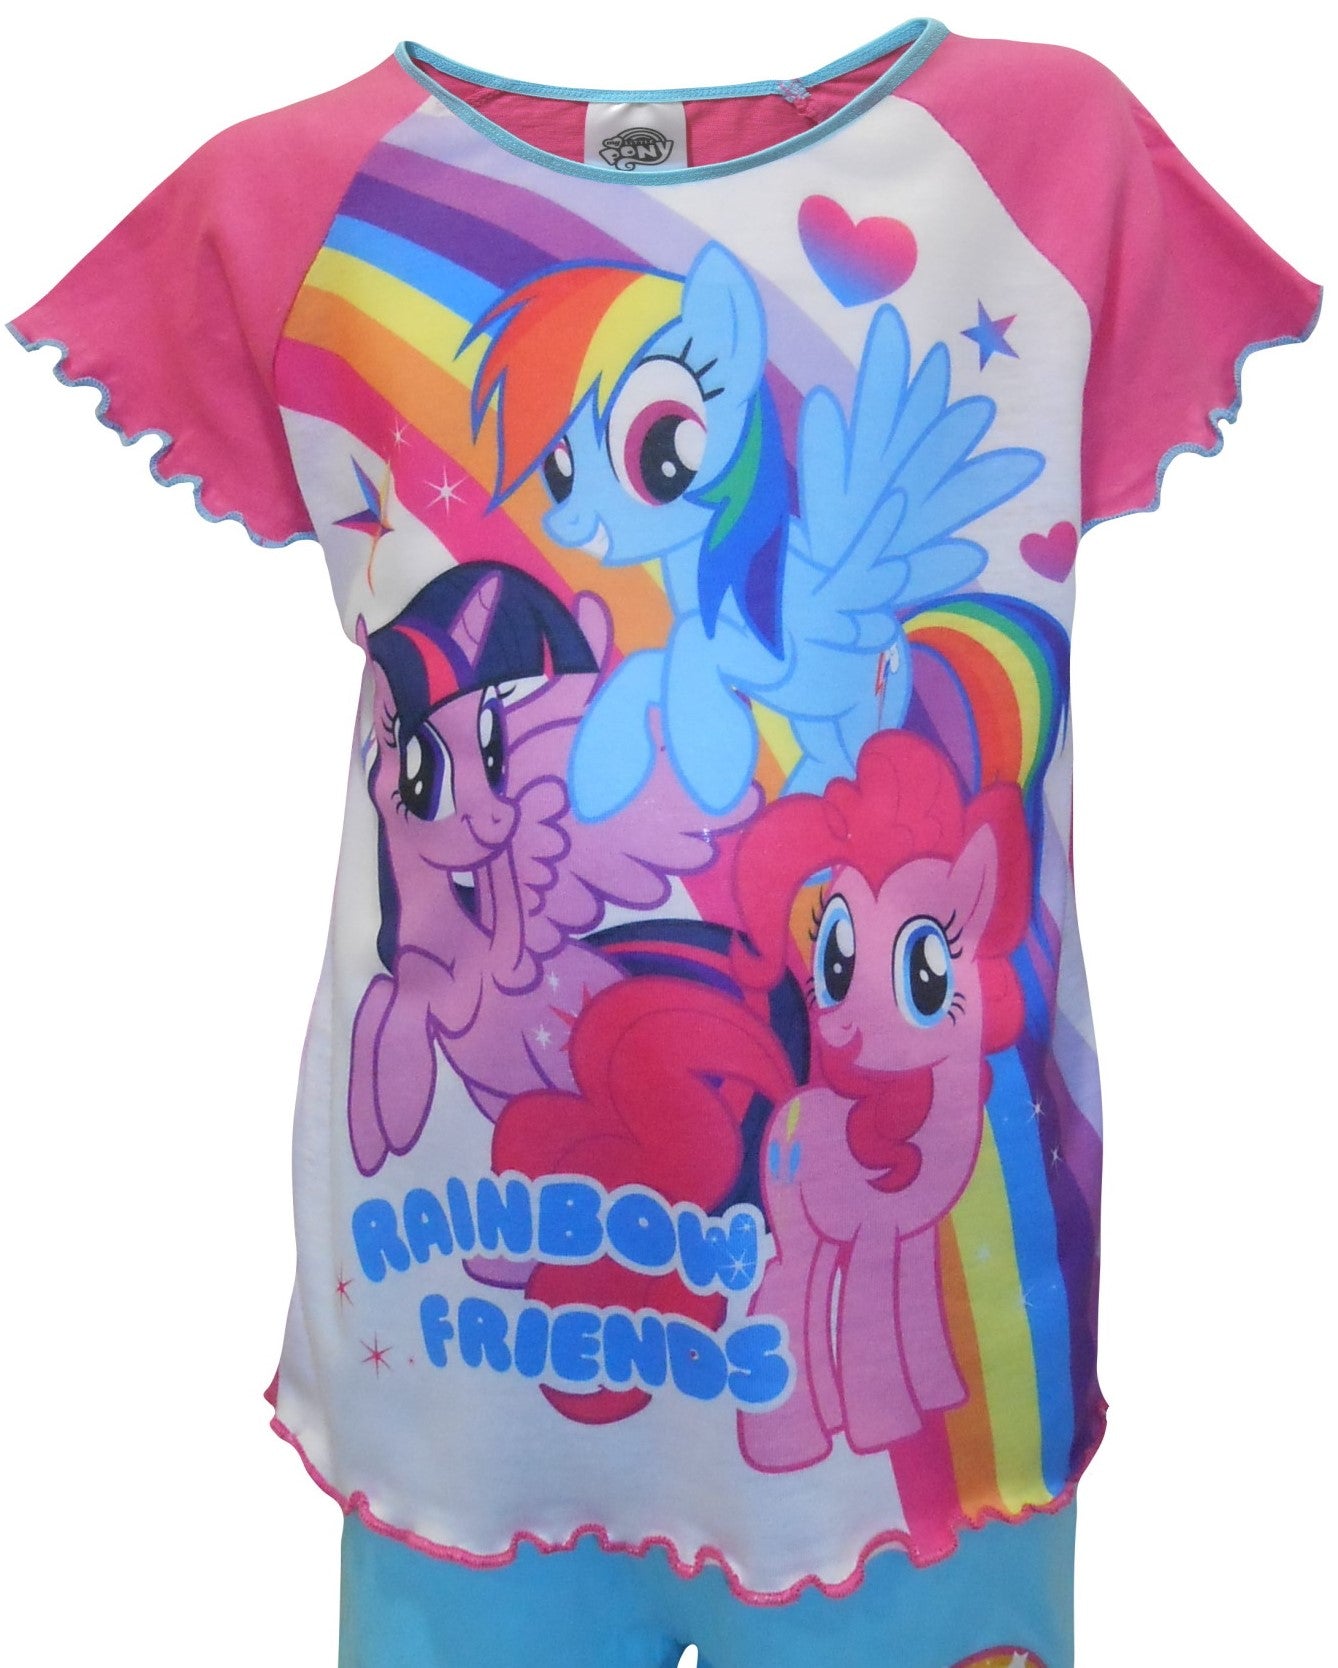 My Little Pony "Rainbow Friends" Girls Shortie Pyjamas